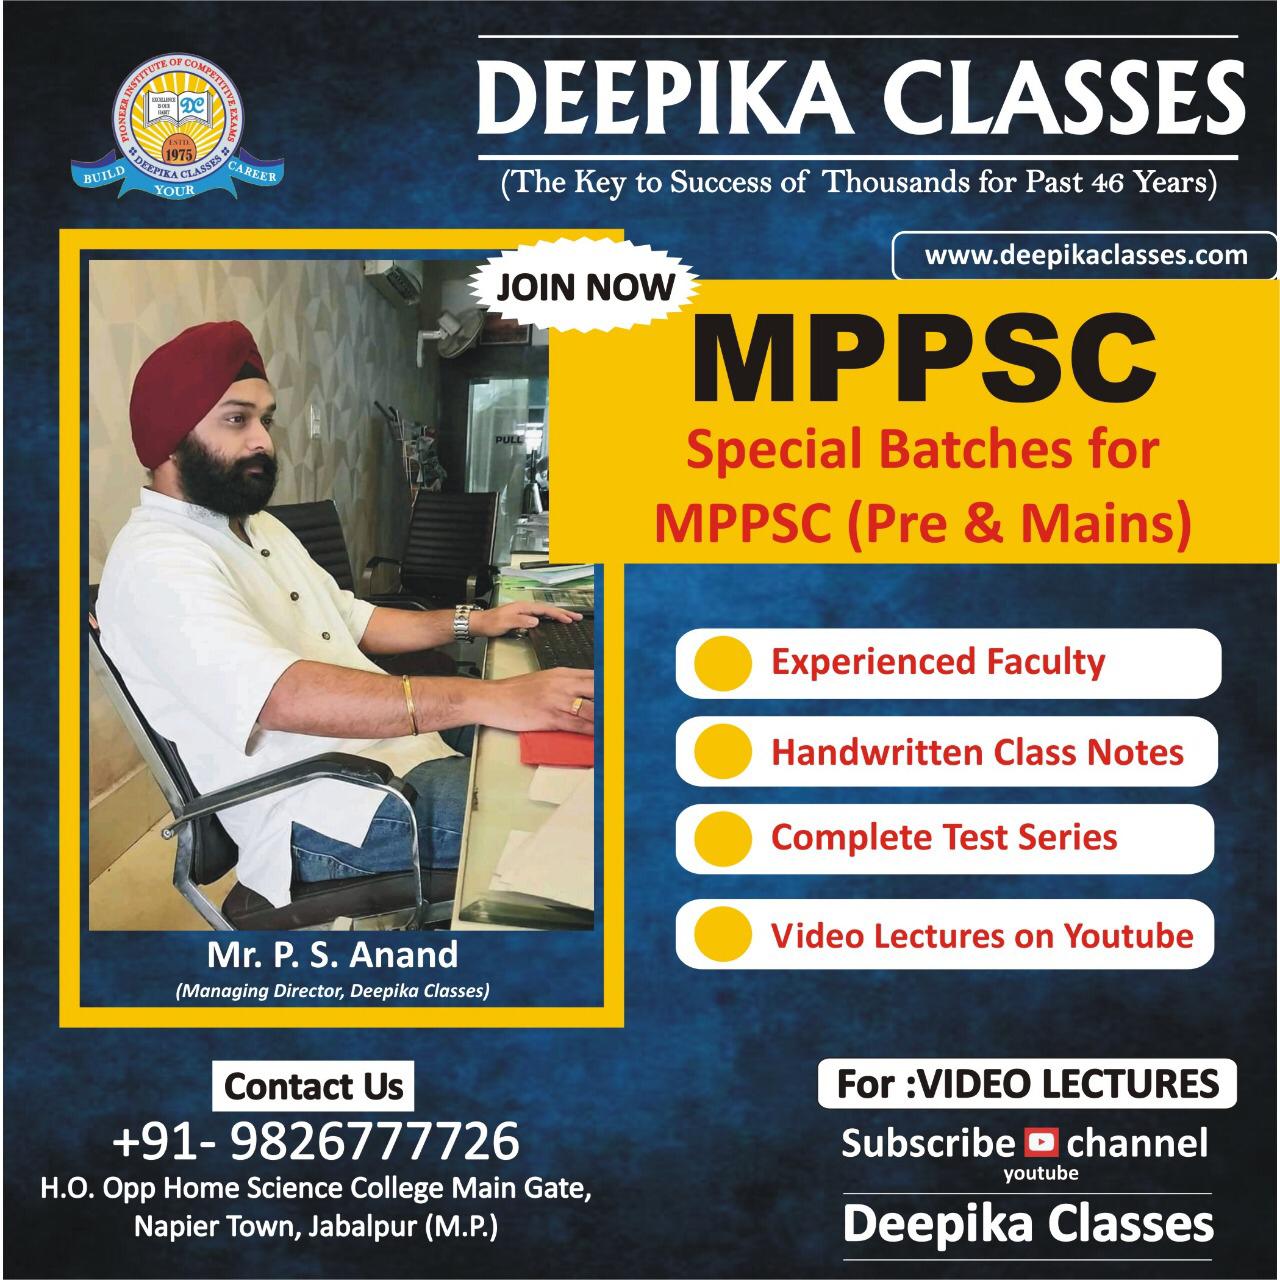 Deepika Classes, MPPSC Classes in Jabalpur, MPPSC Coaching in Jabalpur, Top MPPSC Classes in Jabalpur, Best mppsc coaching classes in Jabalpur, MPPSC coaching institute in Jabalpur, MPPSC  Classes near me in Jabalpur